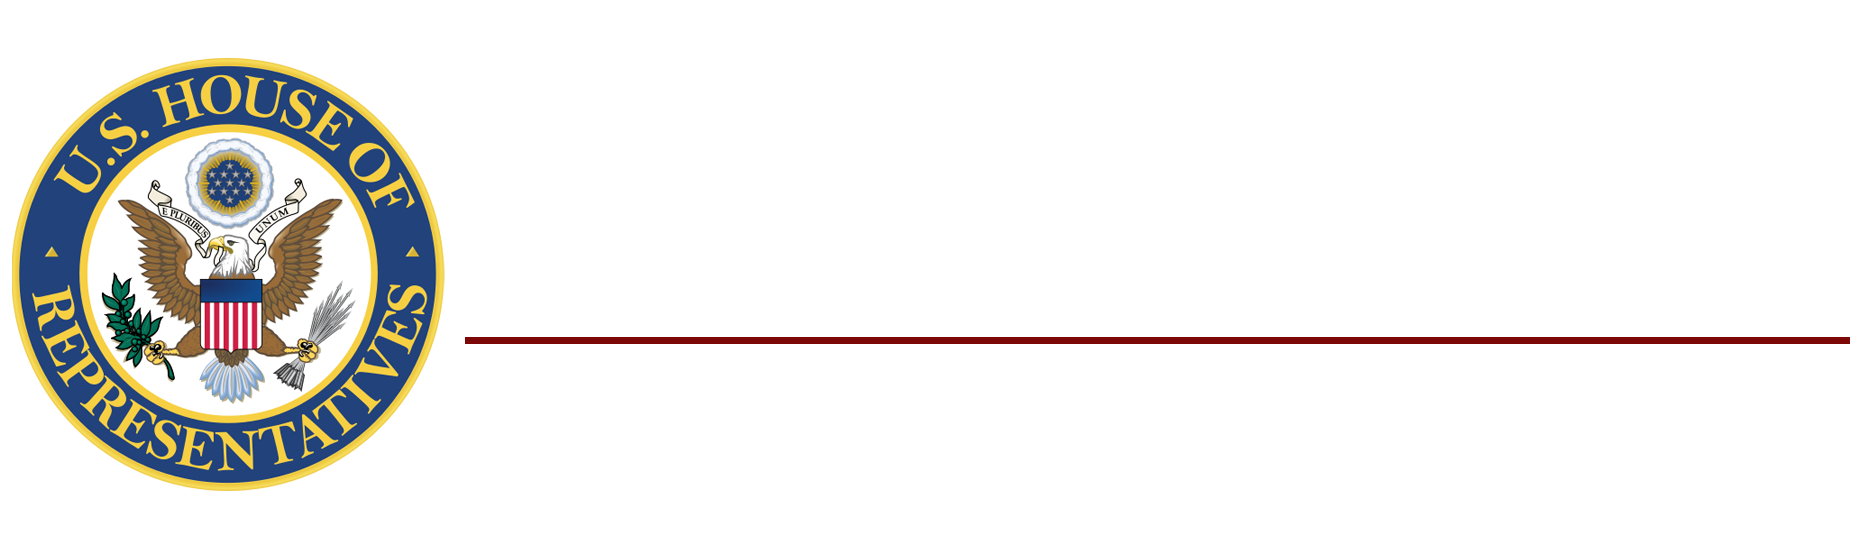 Congressman Greg Murphy, M.D. logo